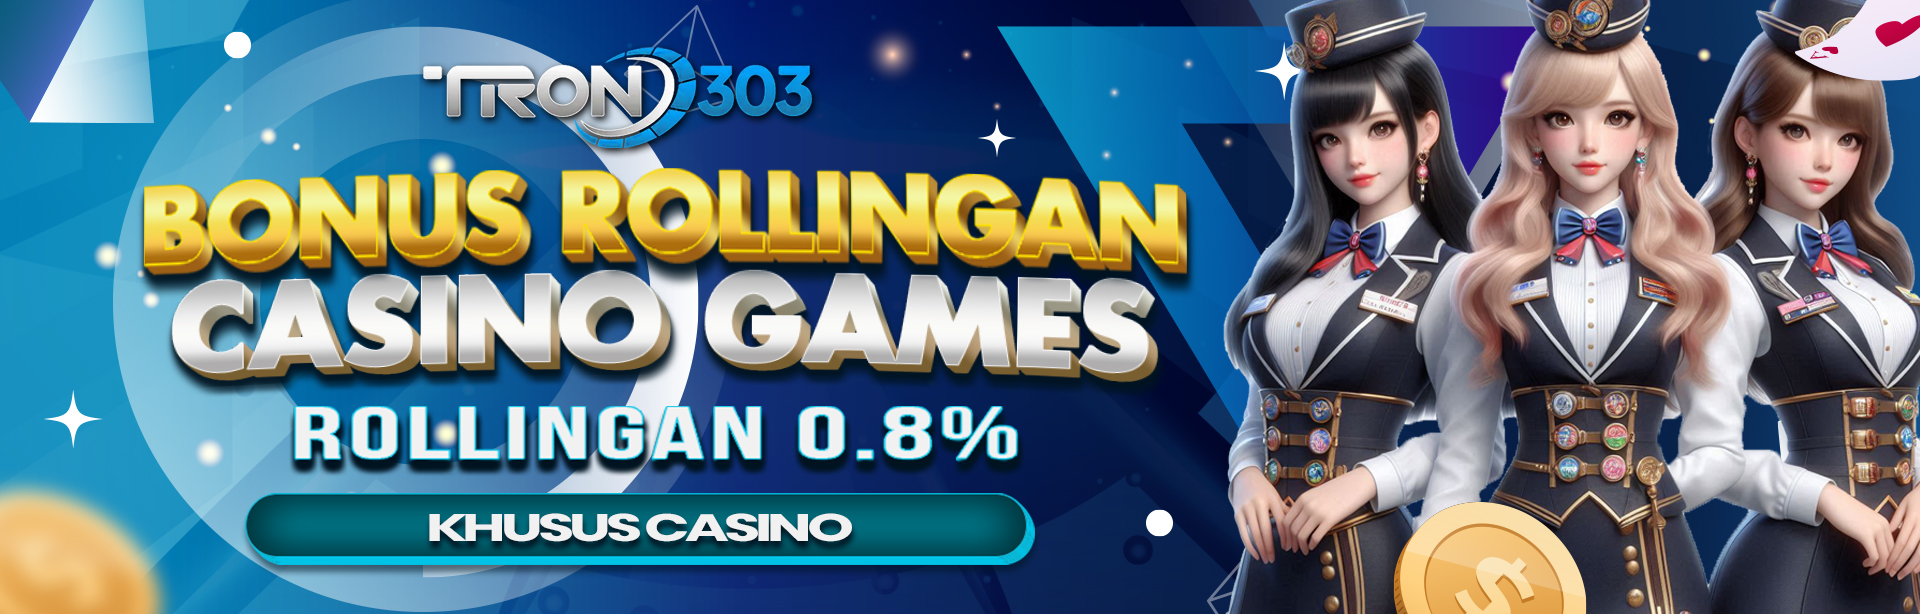 BONUS ROLLINGAN 0.8% CASINO GAMES